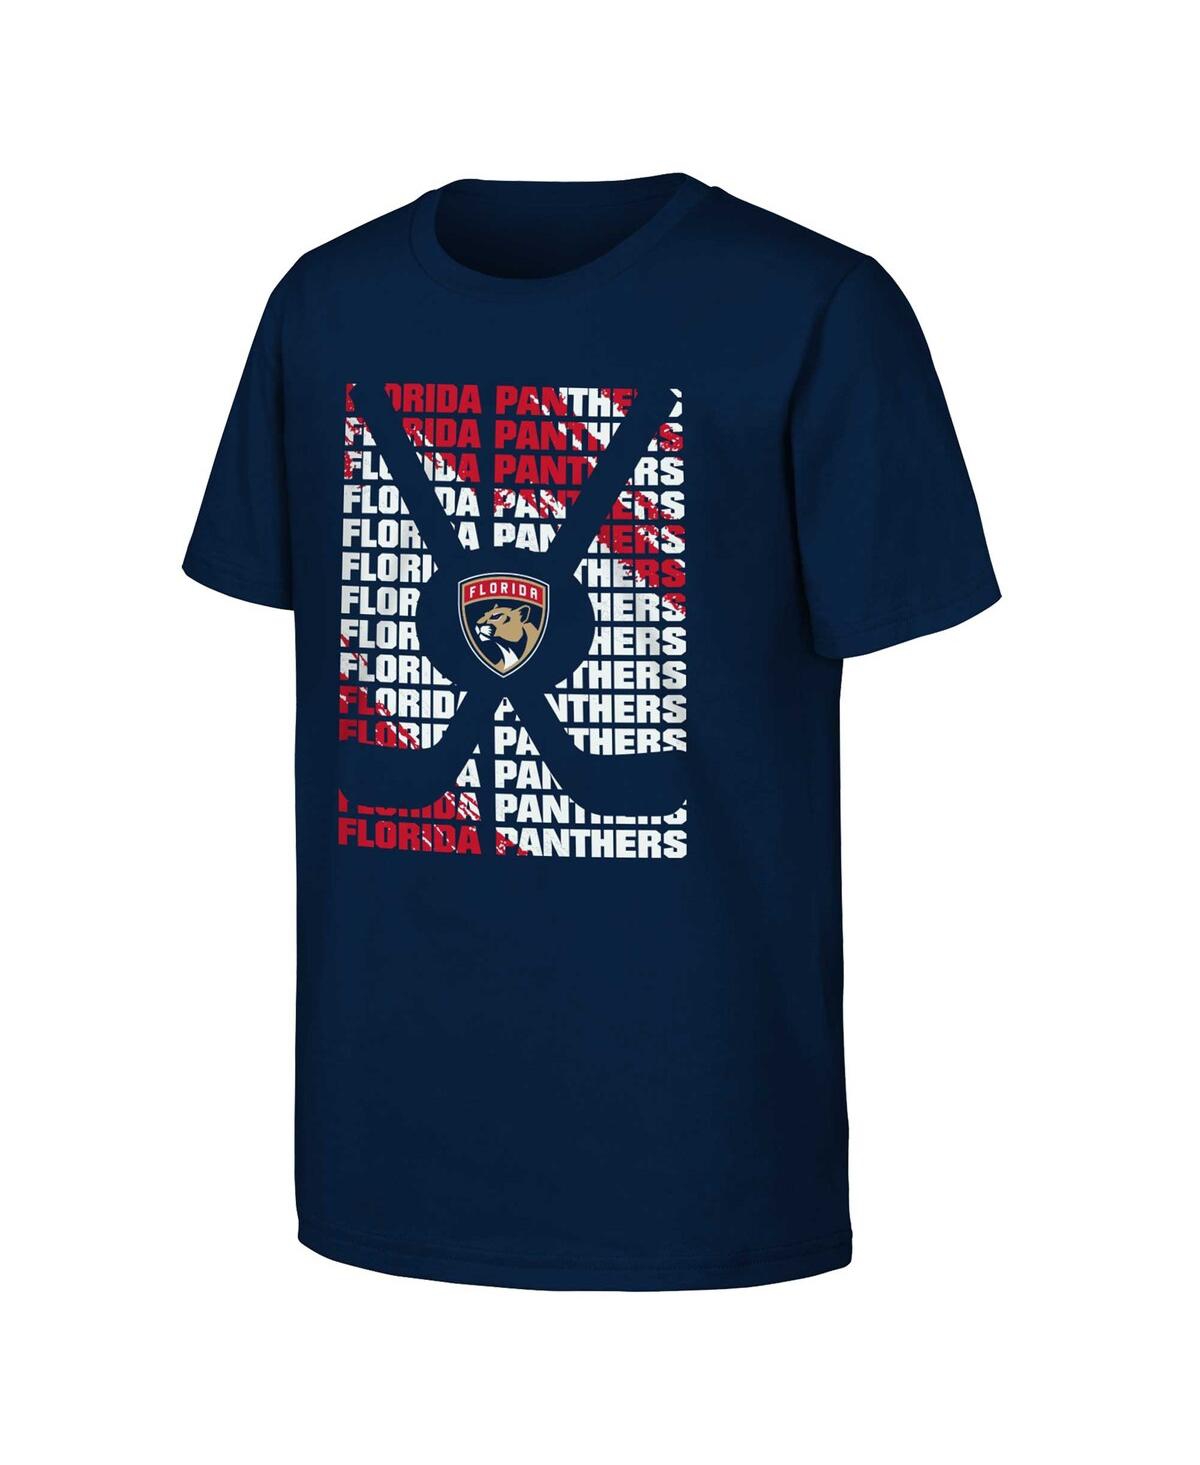 Outerstuff Kids' Big Boys Navy Florida Panthers Box T-shirt